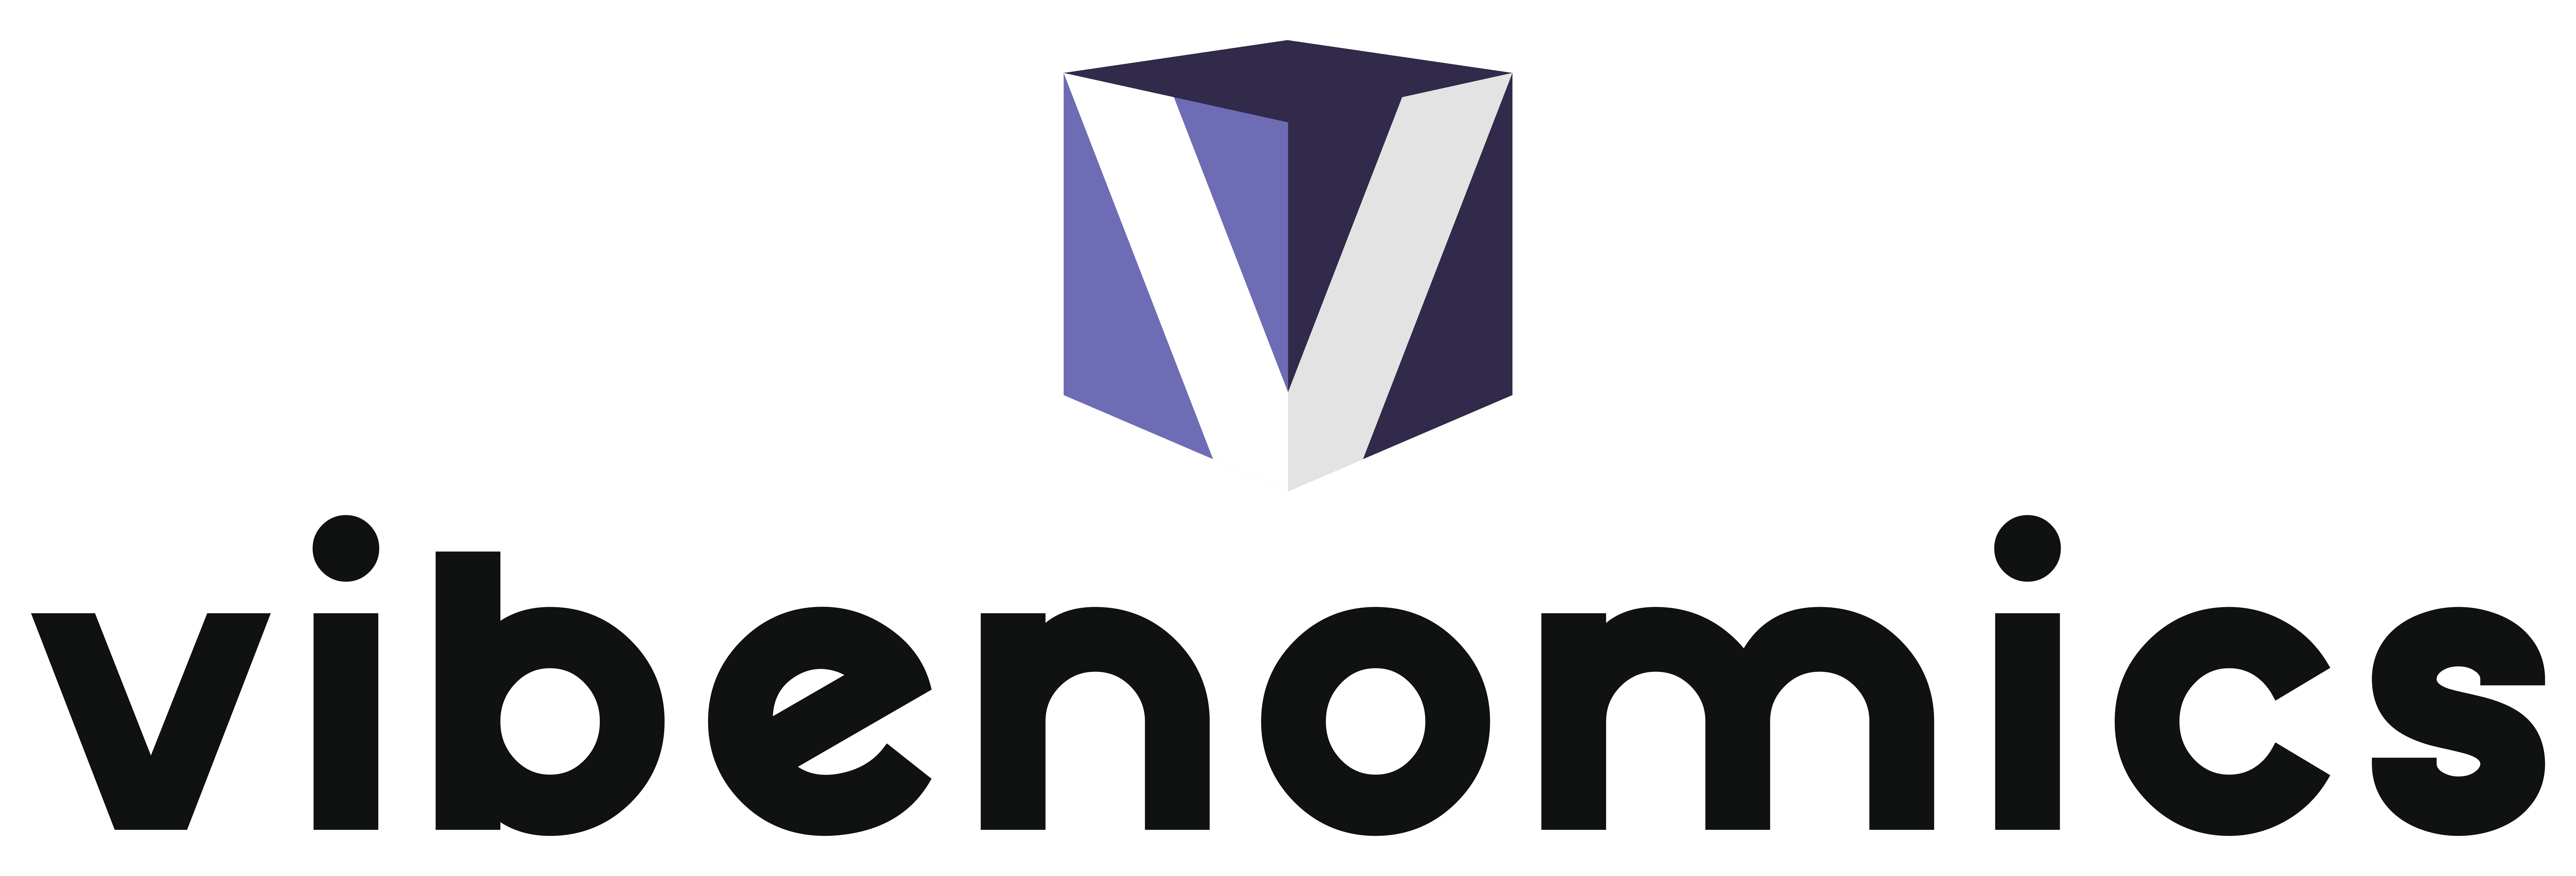 Vibenomics logo text